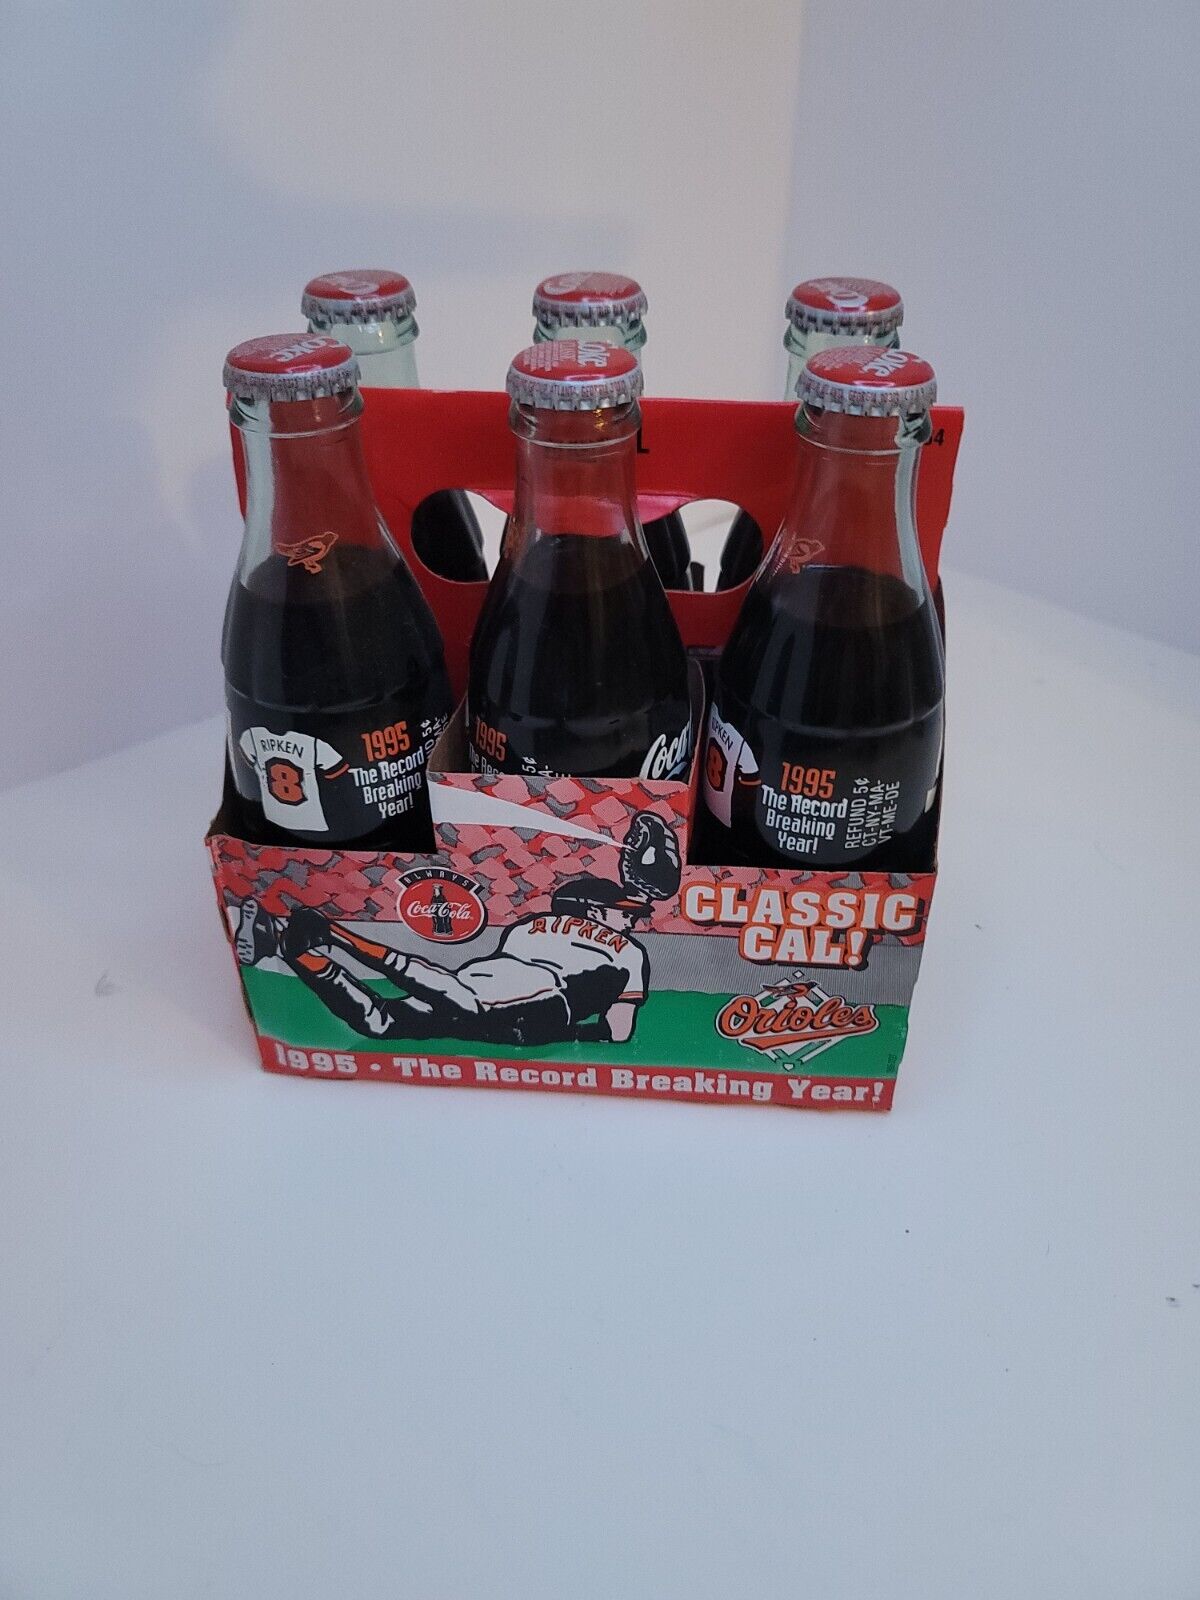 Orioles Vintage Cal Ripken Jr. 6 pack Coke Bottles 1995 Record Breaking Year